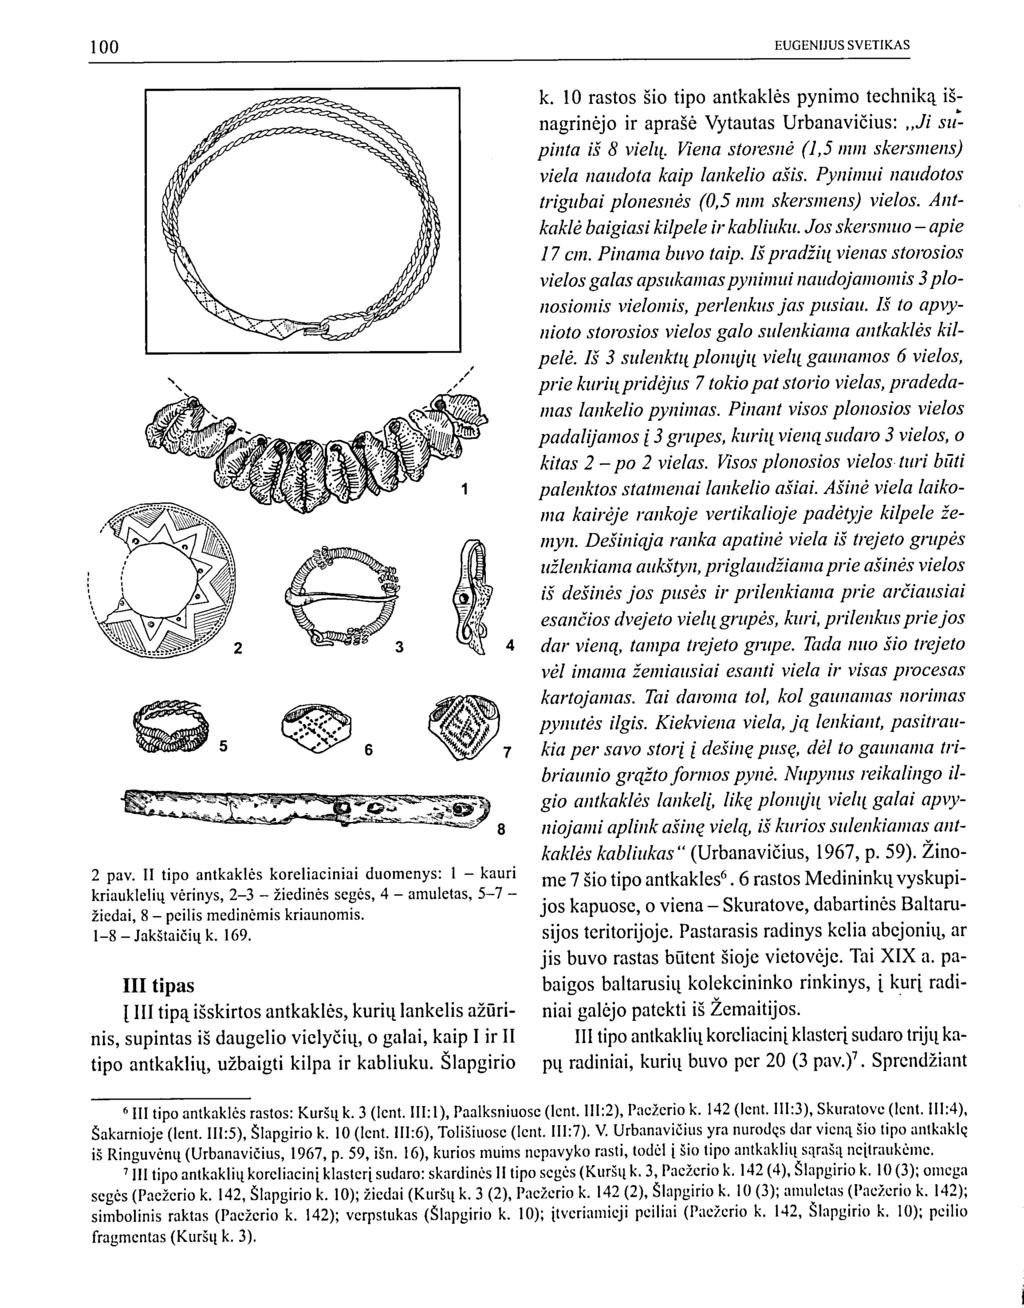 2 pav. II tipo antkaklės koreliaciniai duomenys: 1 - kauri kriauklelių vėrinys, 2-3 - žiedinės segės, 4 - amuletas, 5-7 - žiedai, 8 - peilis medinėmis kriaunomis. 1-8 - Jakštaičių k. 169.